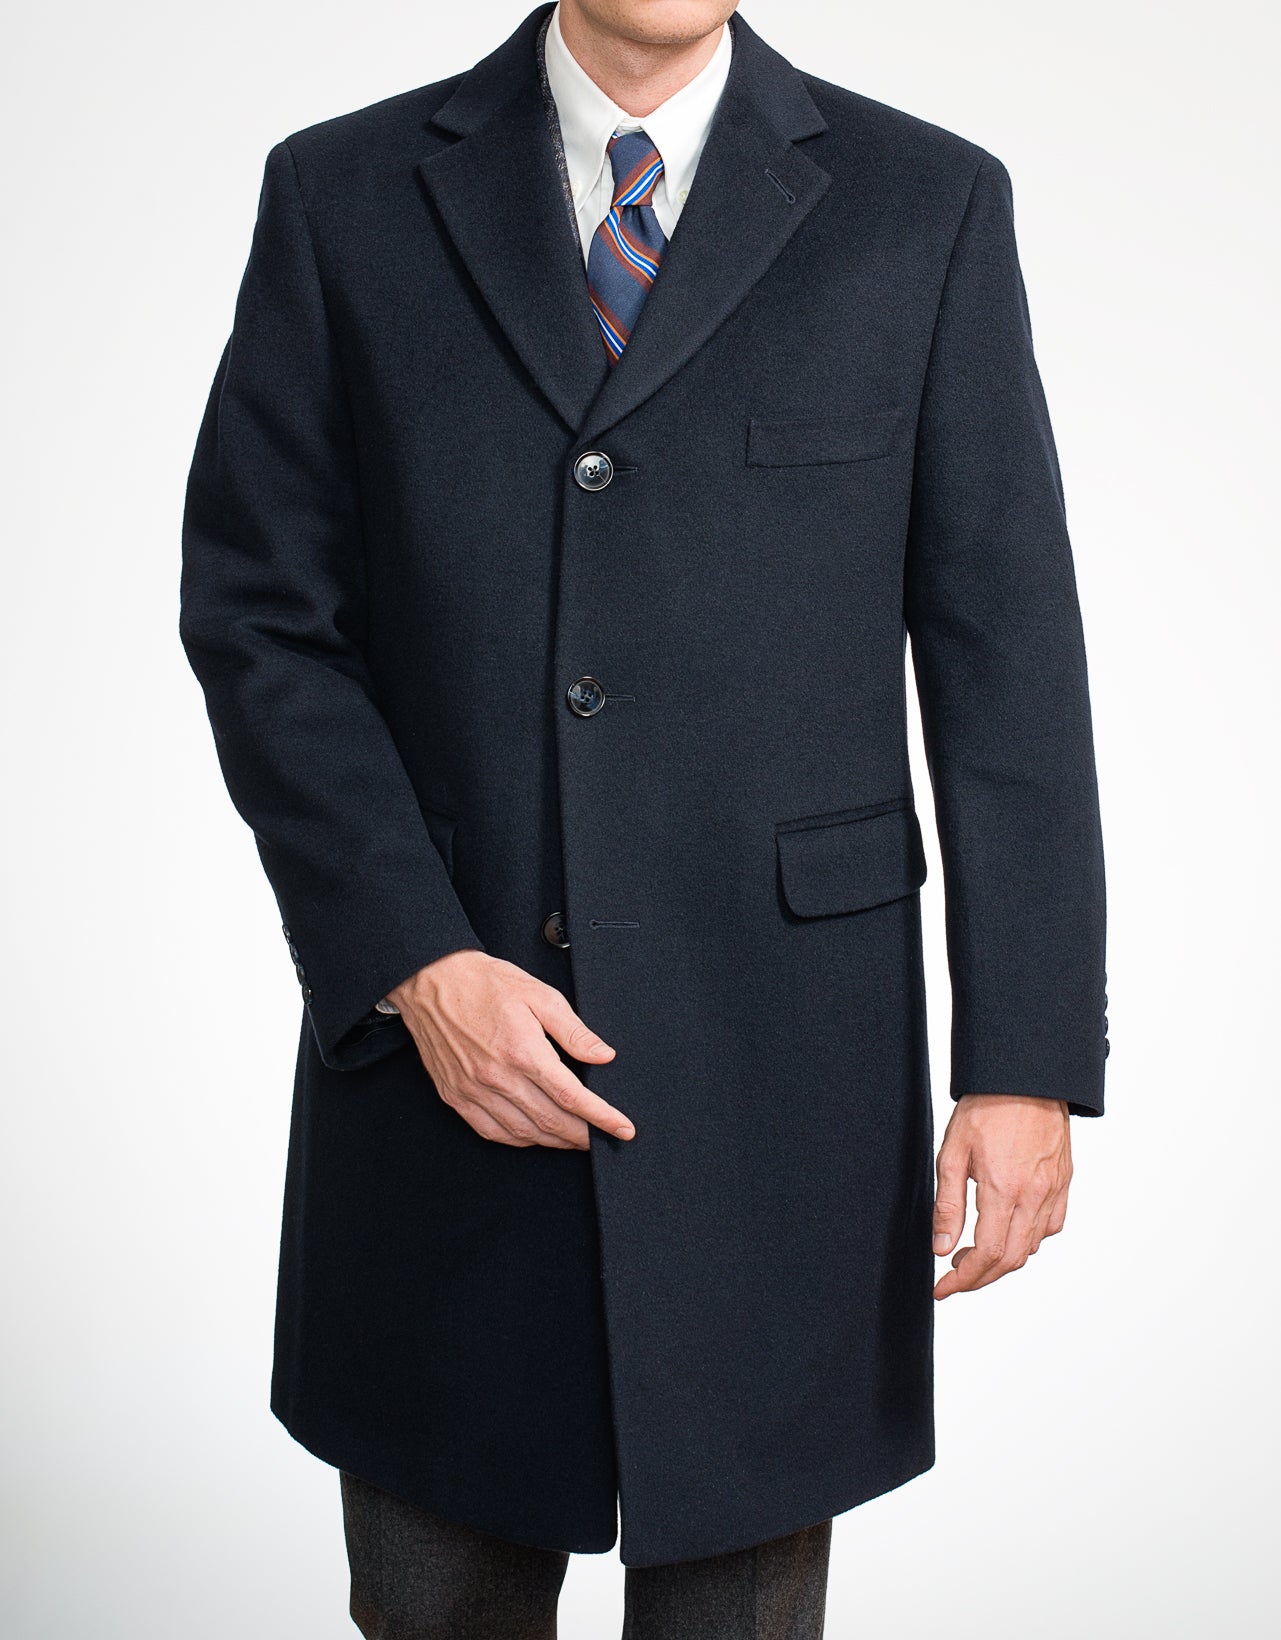 Navy Wool Top Coat | Men's Sportcoats & Dress Clothes - J. Press